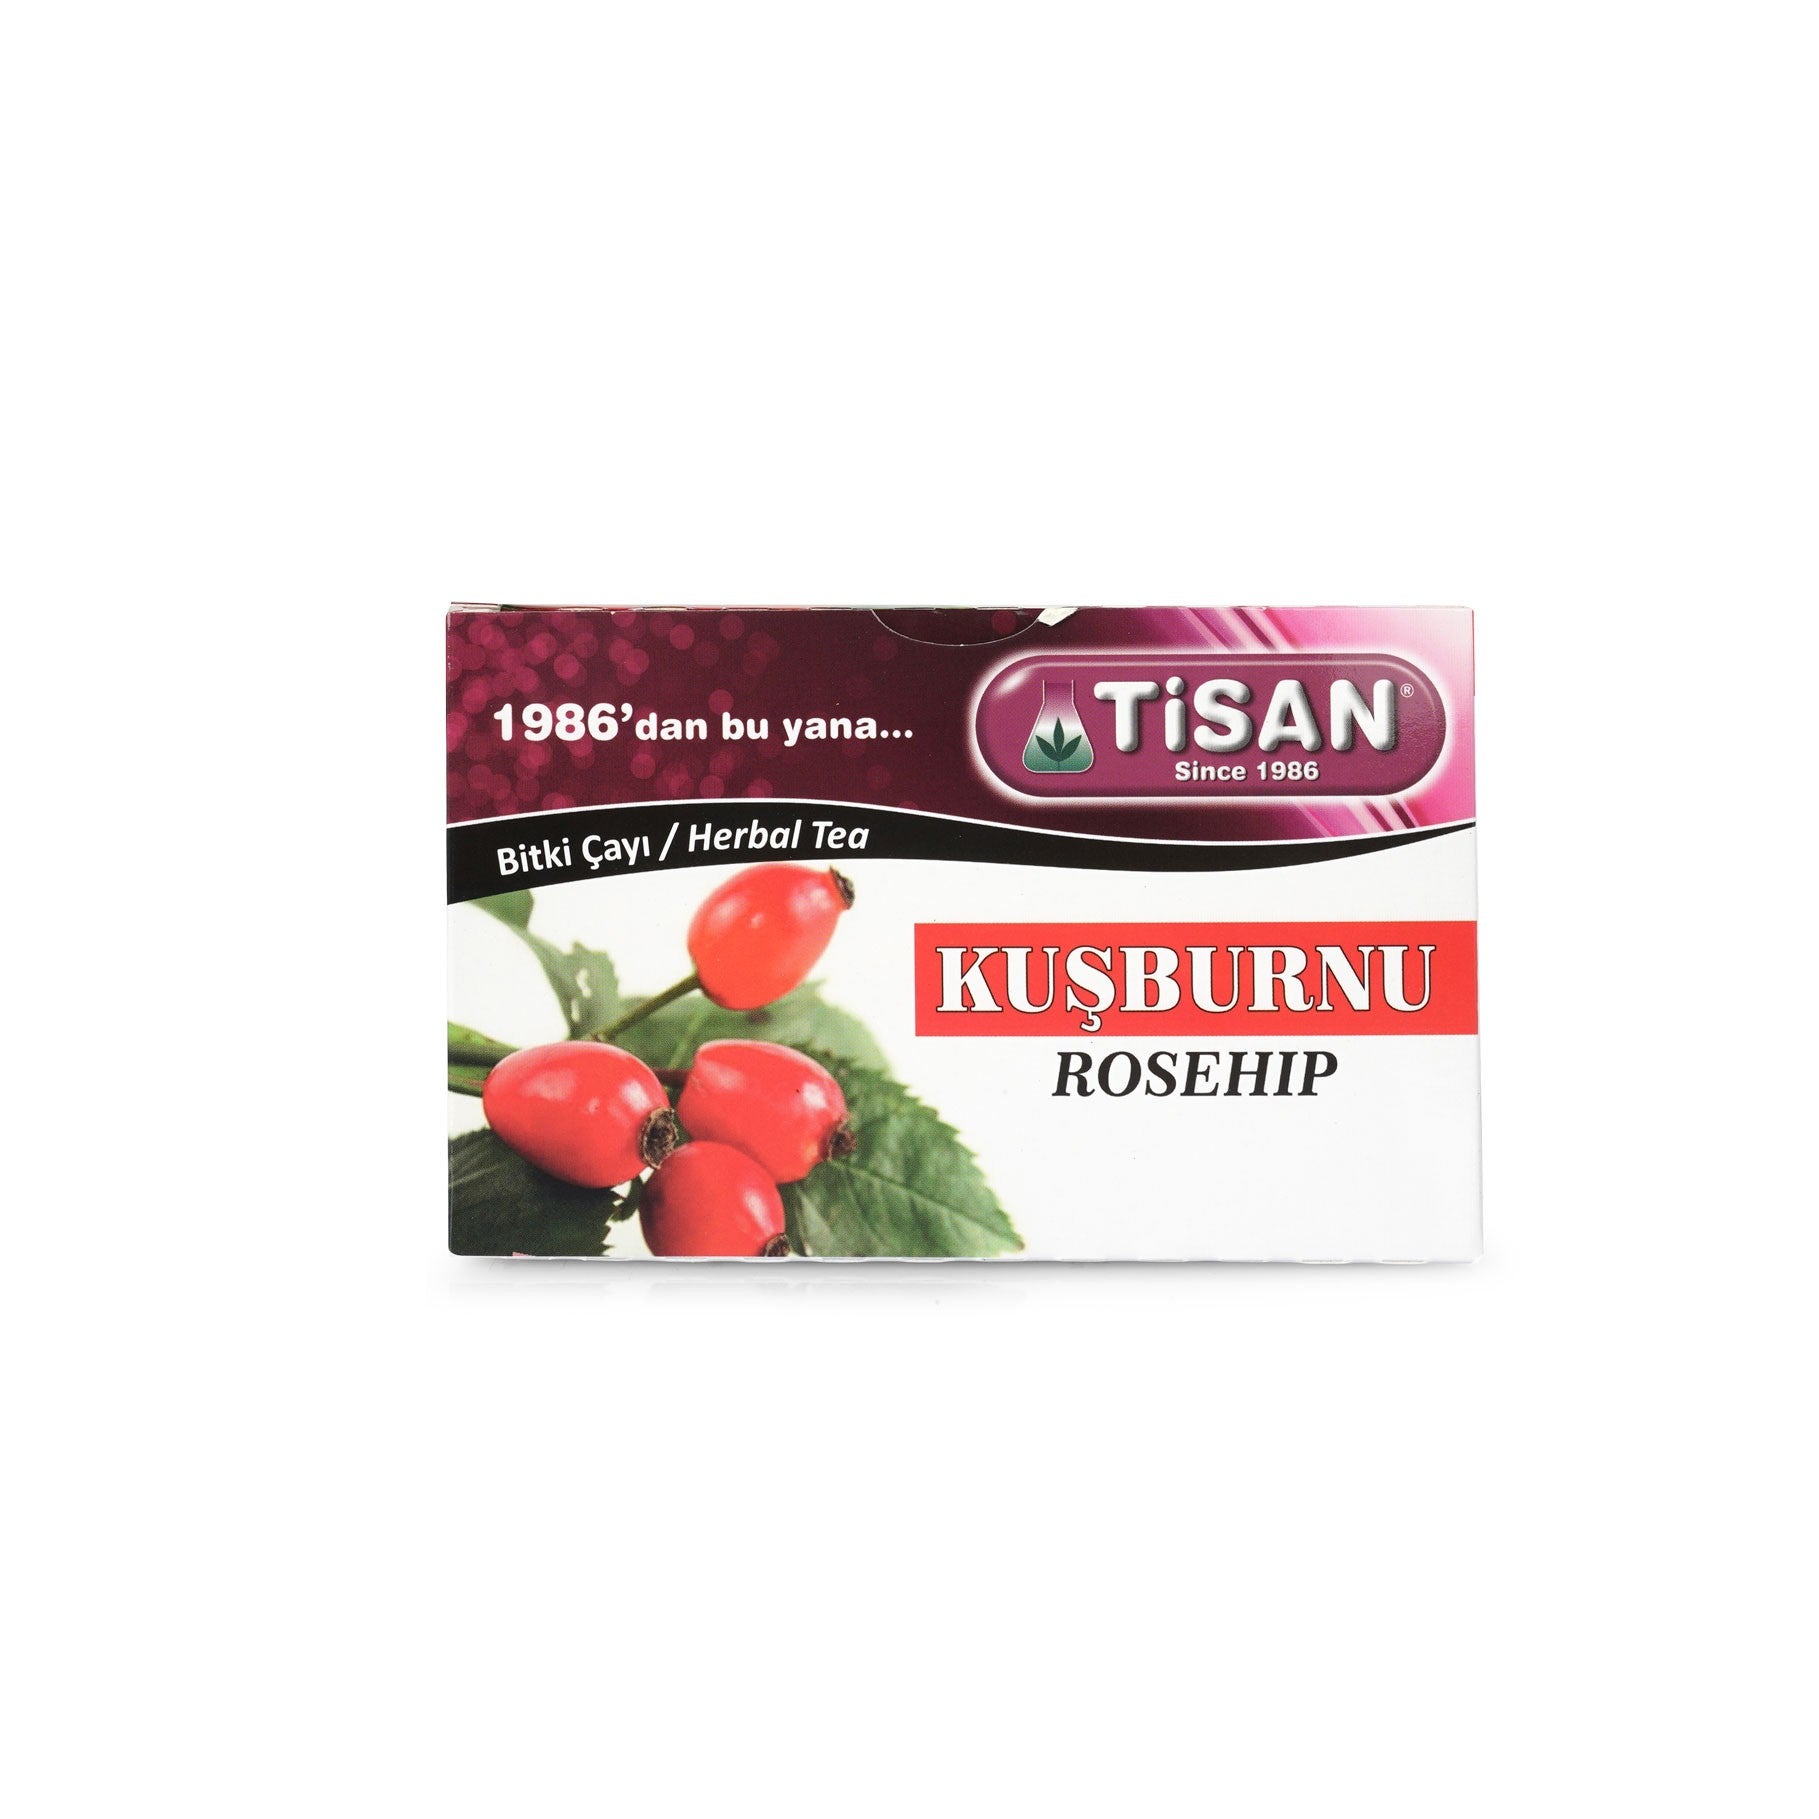 Tisan RO-1SE HIP TEA